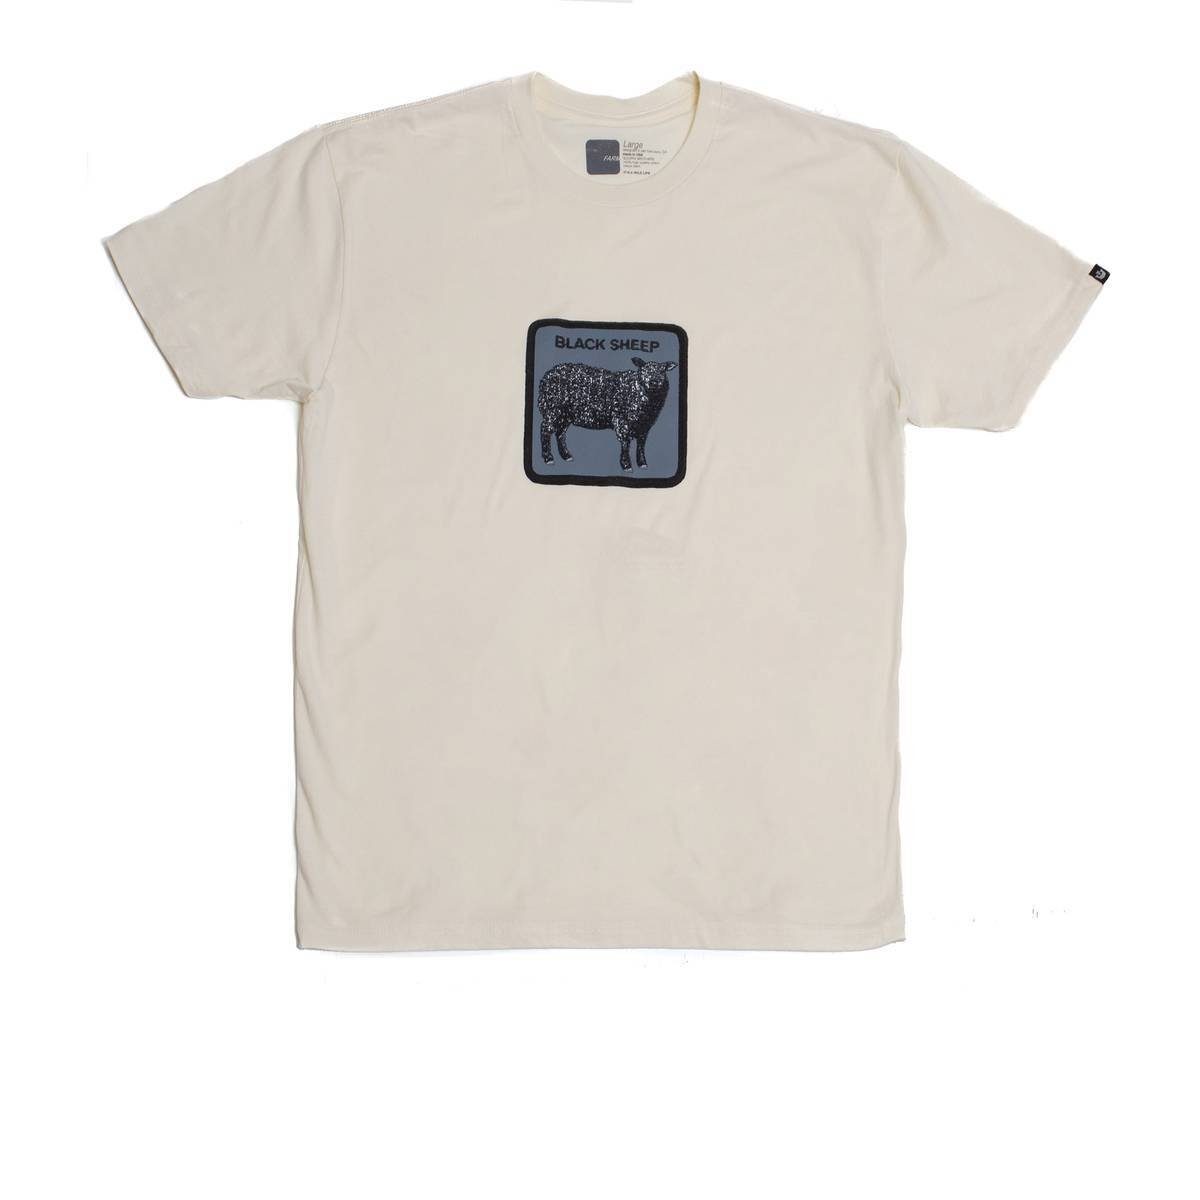 GOORIN Bros. T-Shirt Herren T-Shirt - Rundhals, Baumwolle, Logo-Patch Black Sheep - Beige